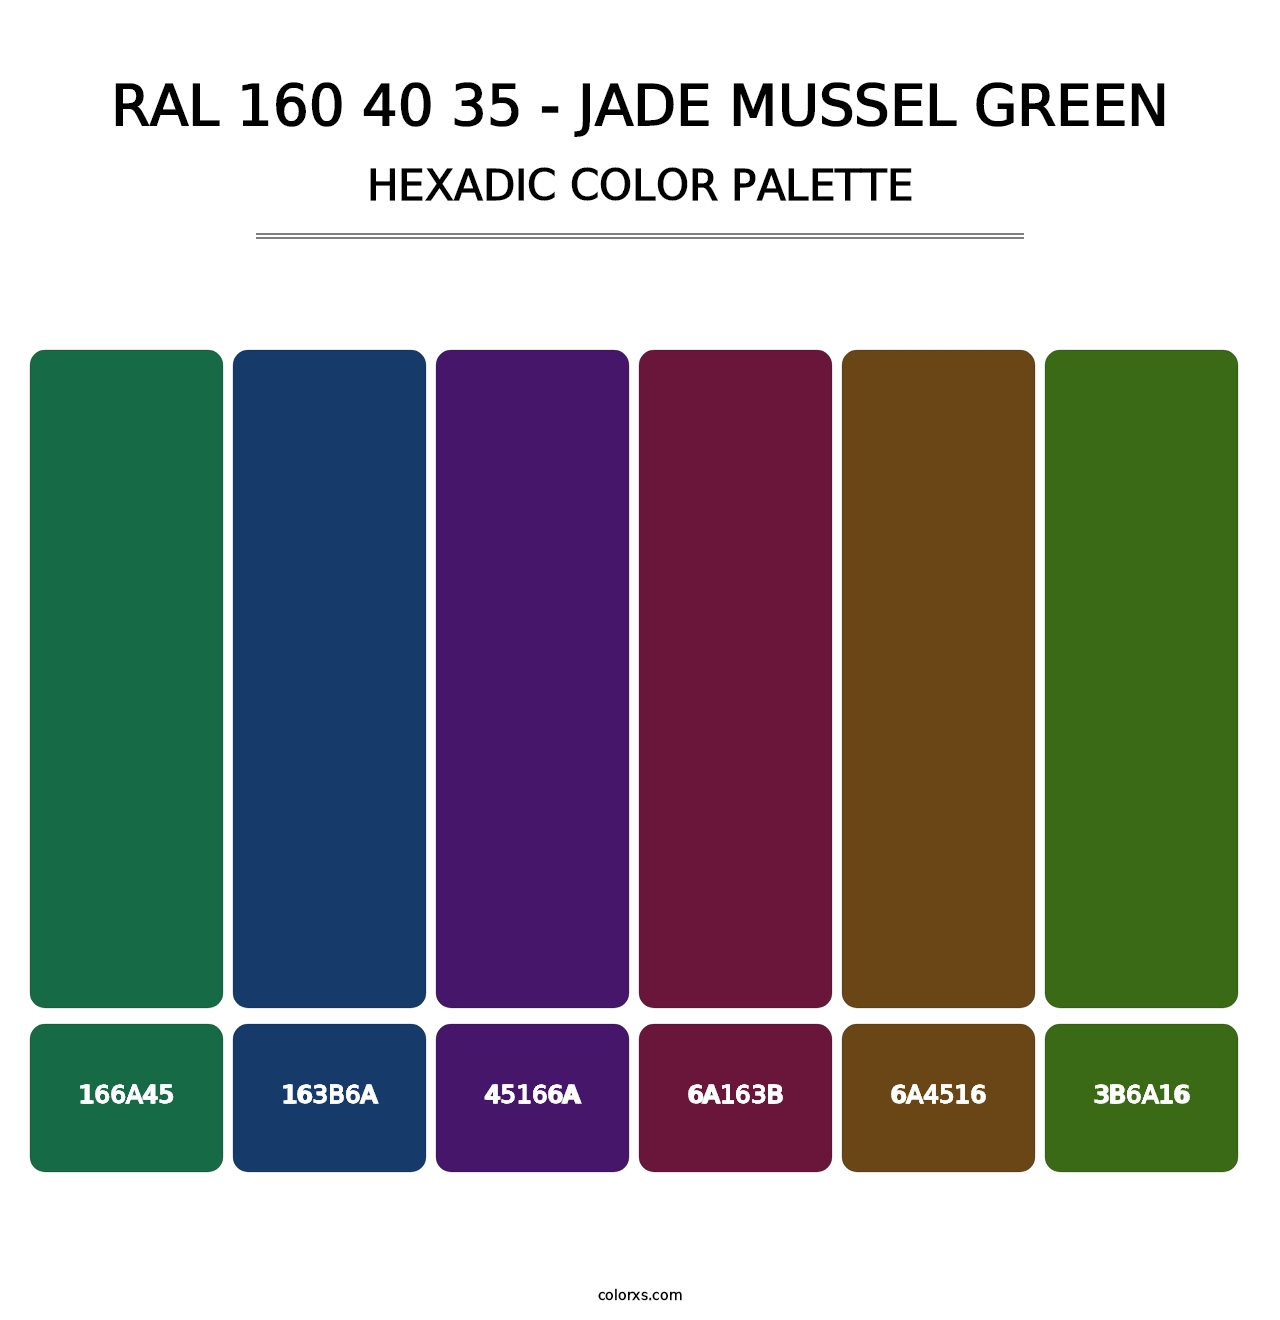 RAL 160 40 35 - Jade Mussel Green - Hexadic Color Palette